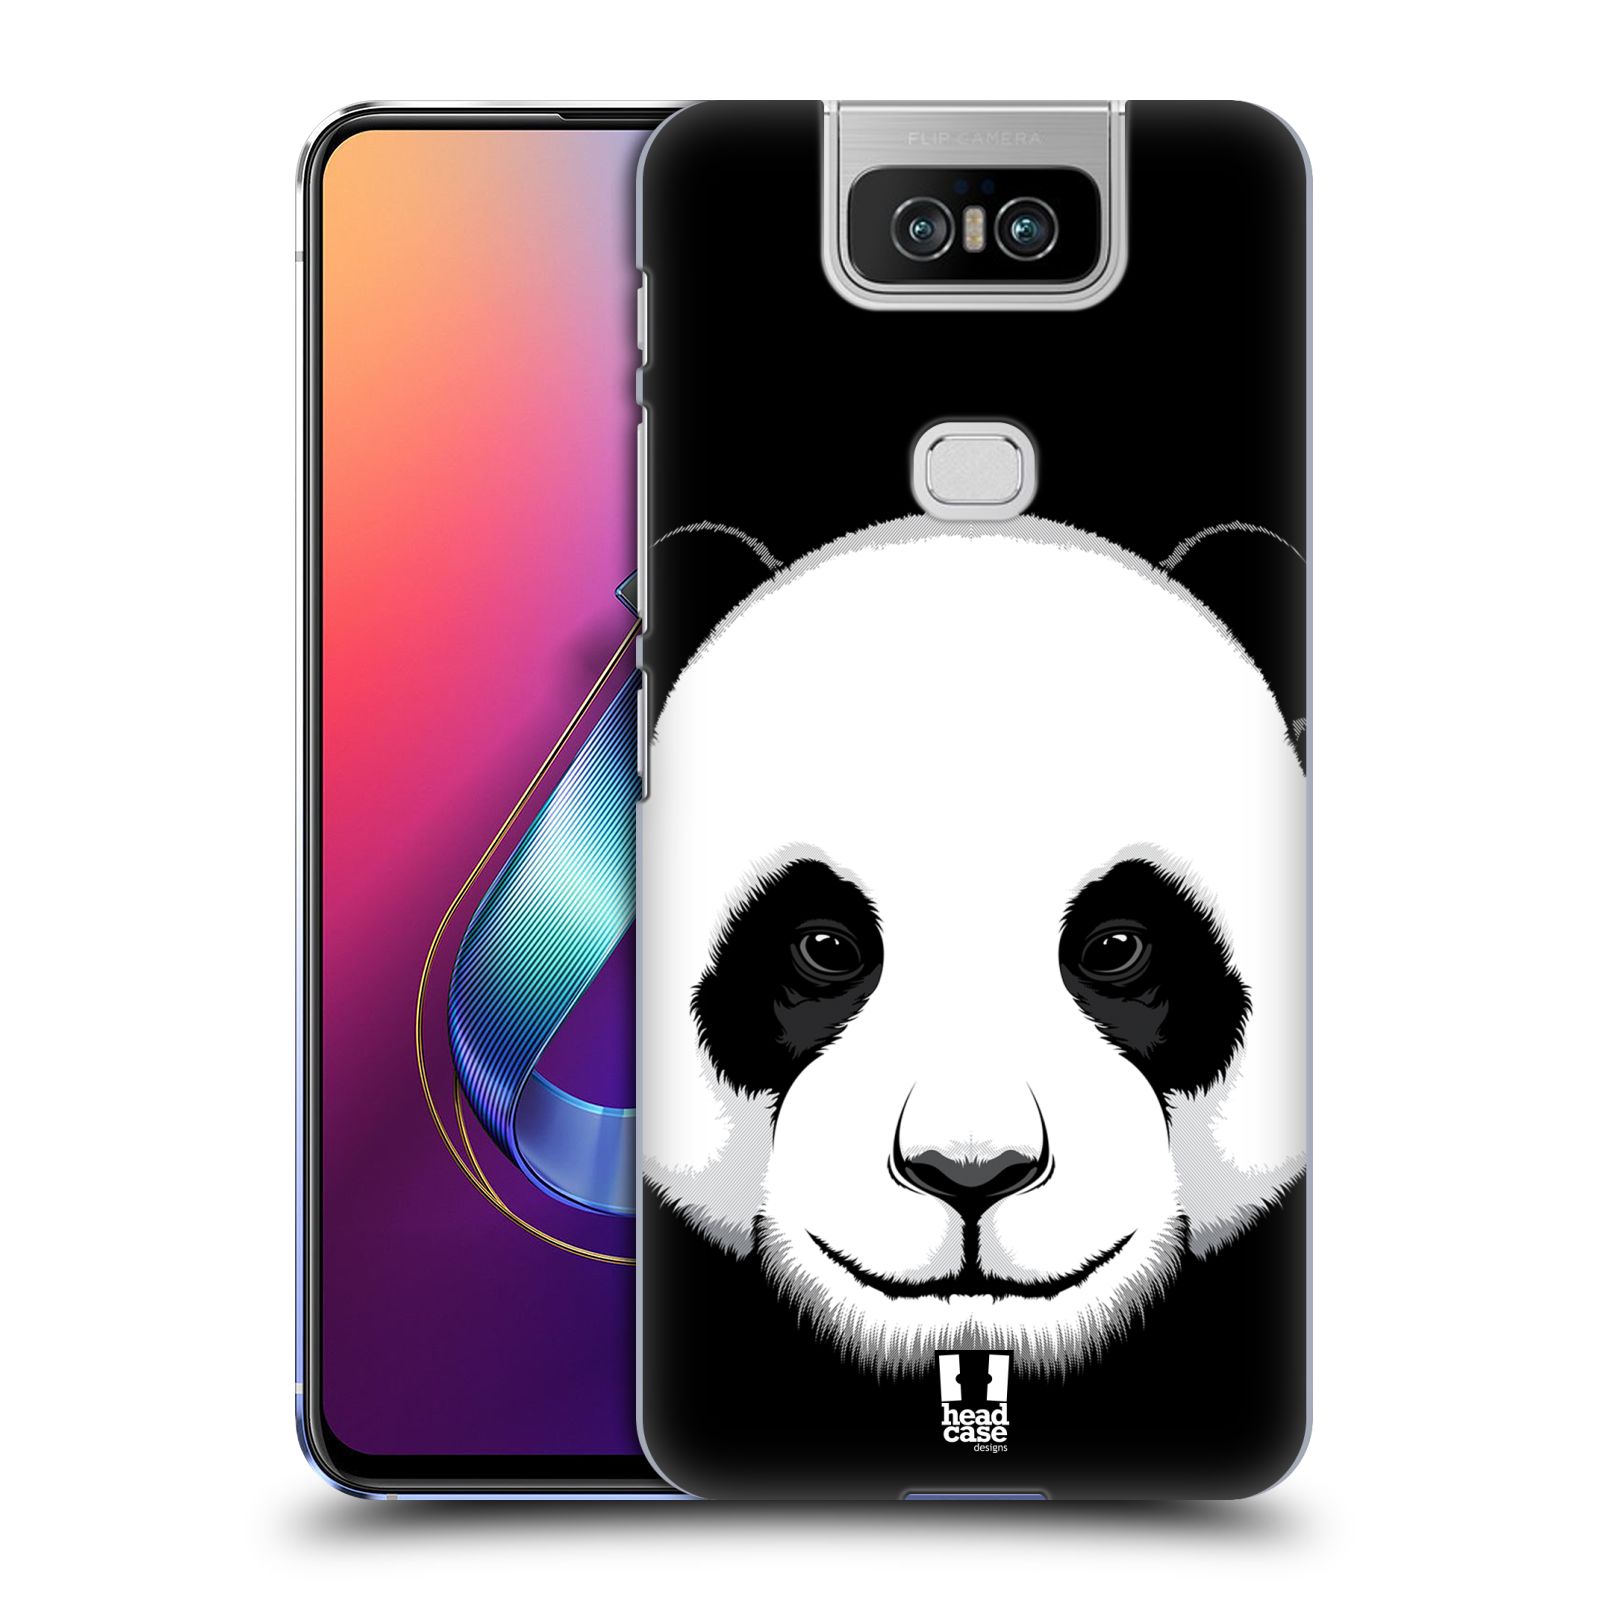 Pouzdro na mobil Asus Zenfone 6 ZS630KL - HEAD CASE - vzor Zvíře kreslená tvář panda